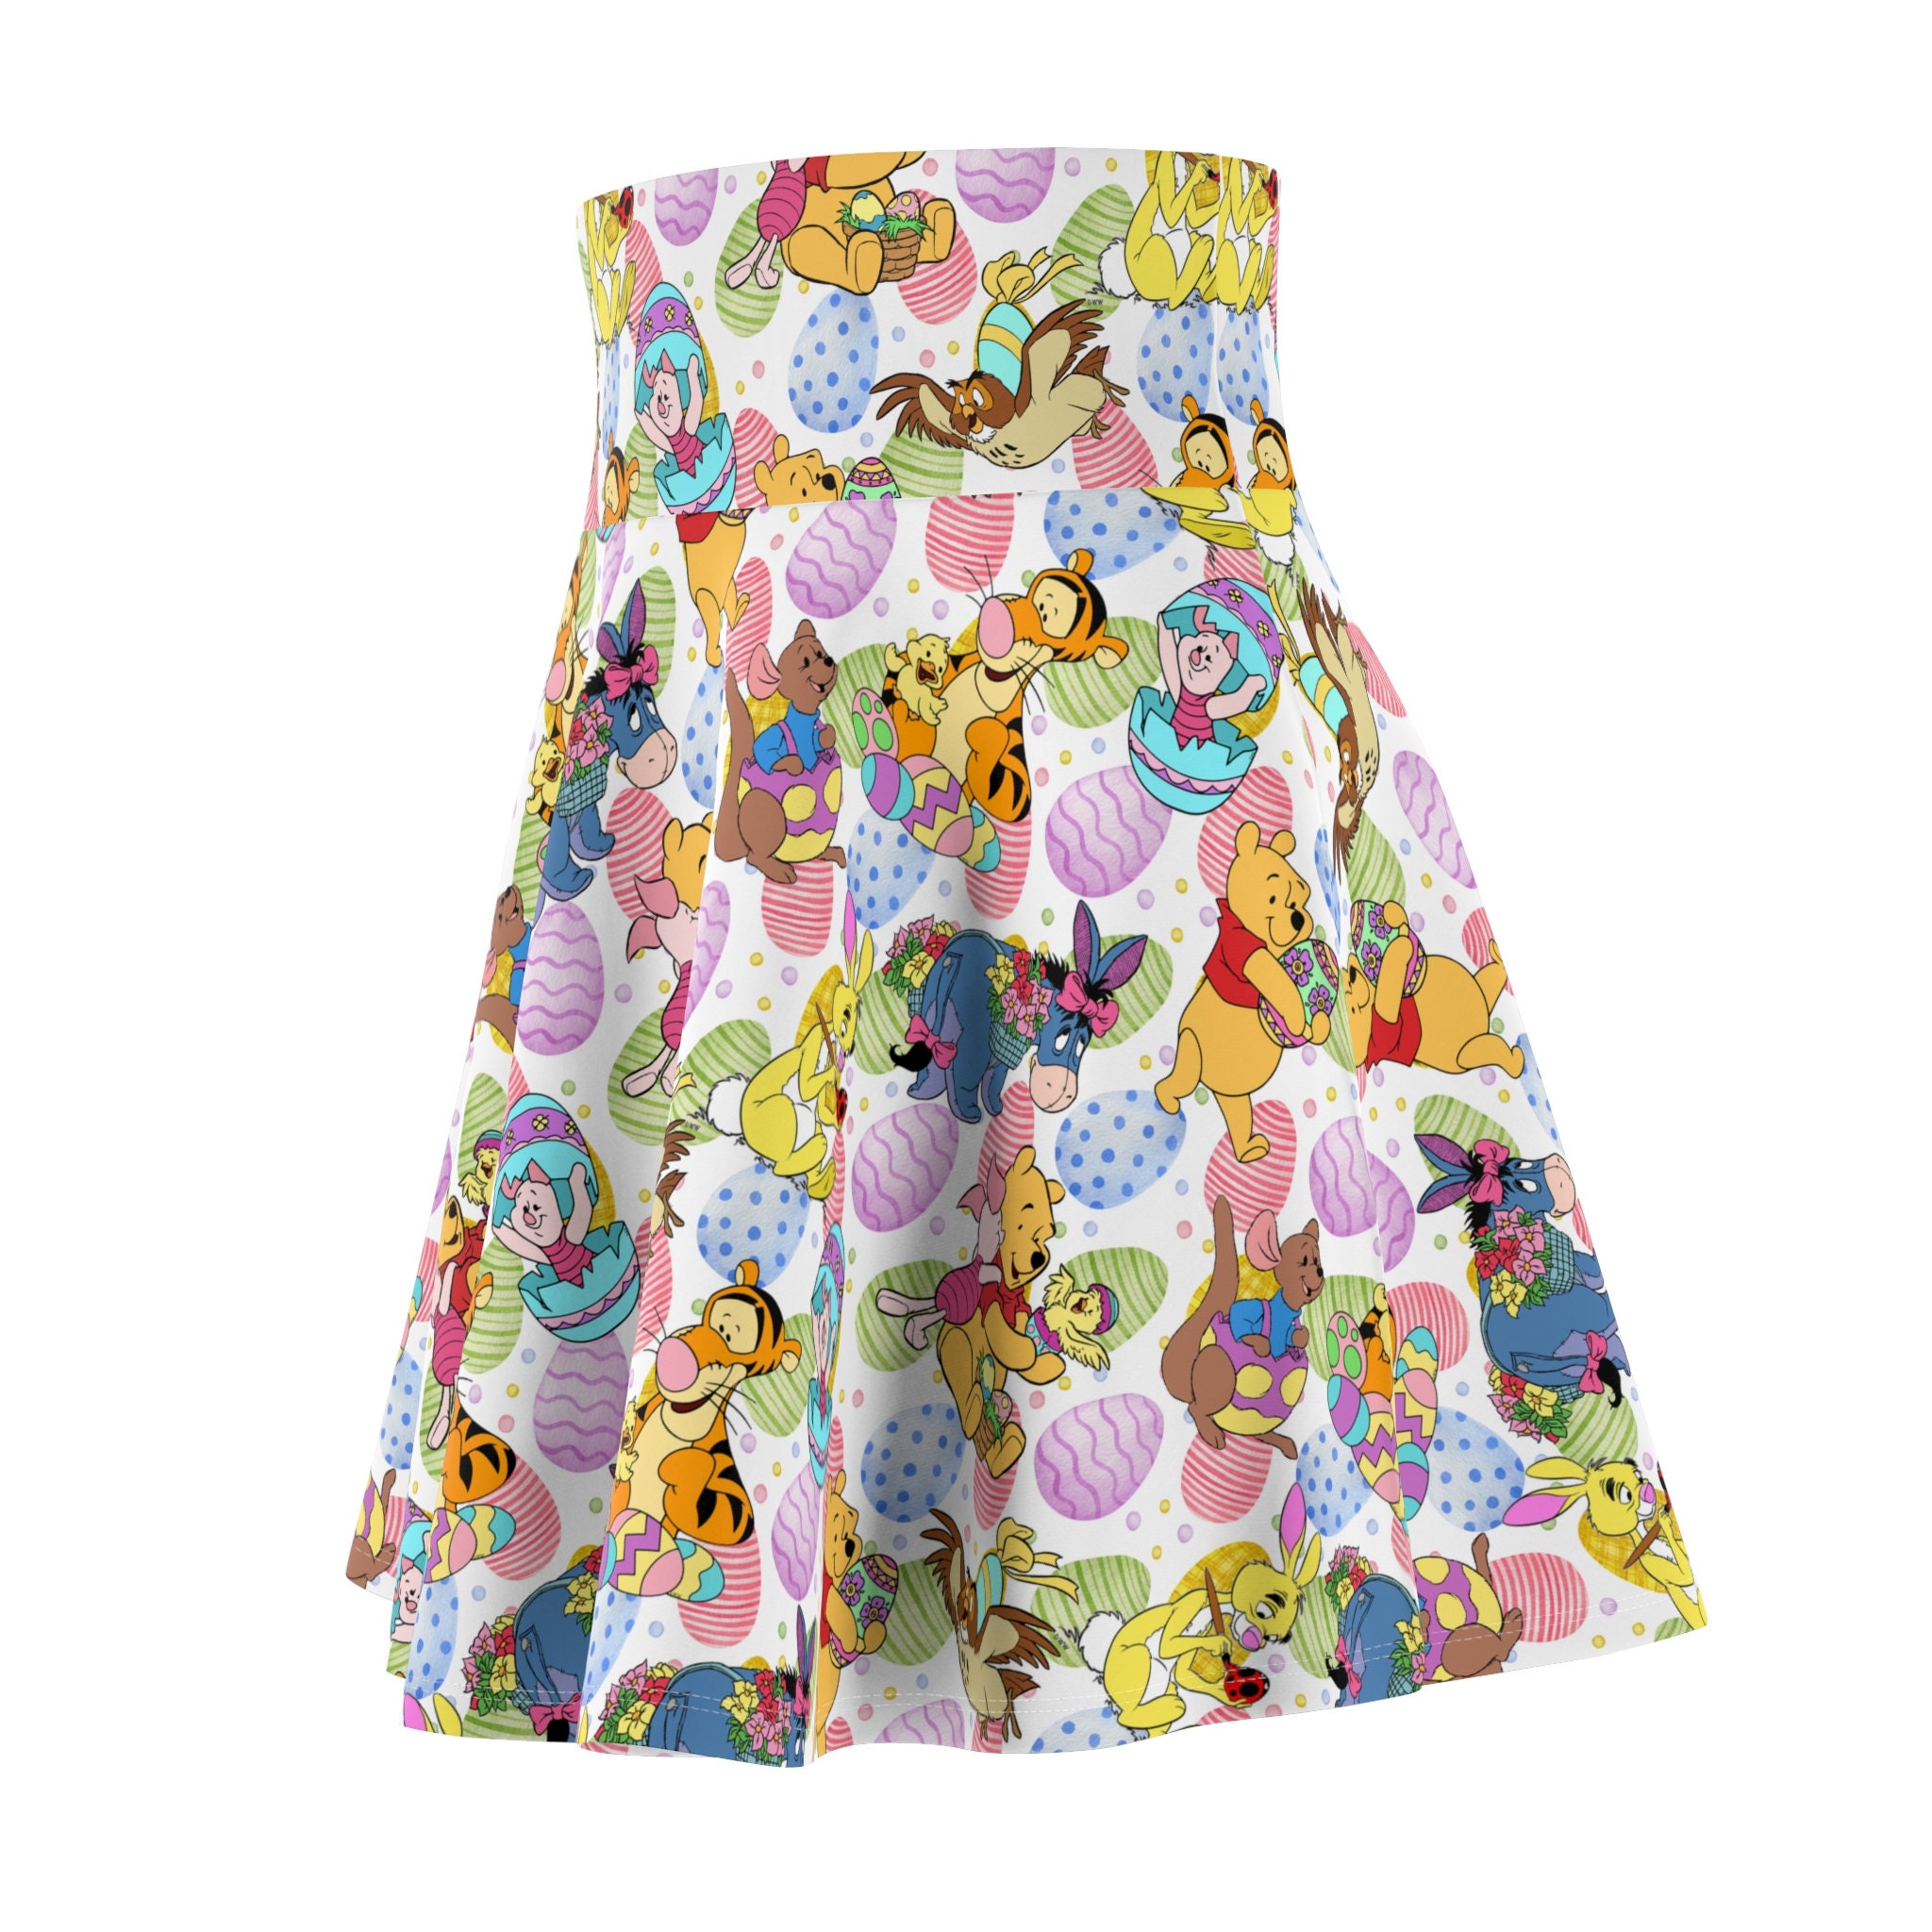 Winnie the Pooh Easter Women's Skater Skirt (AOP)